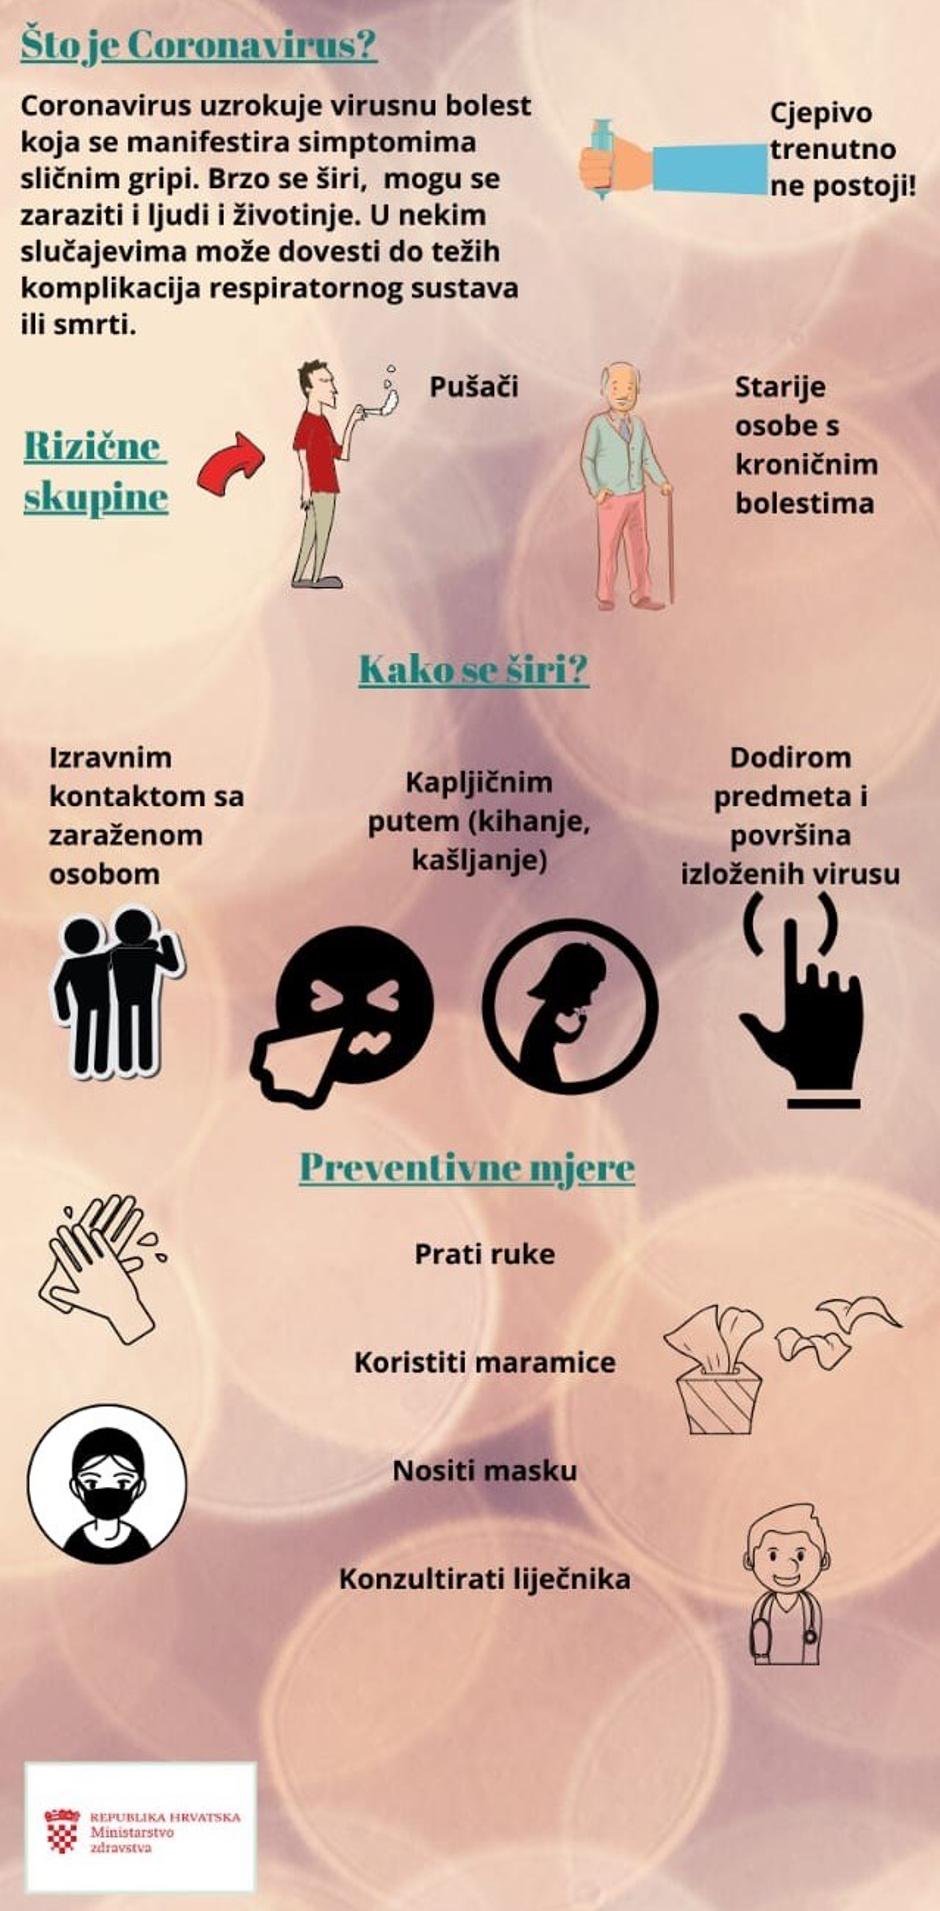  | Author: Ministarstvo zdravstva Republike Hrvatske